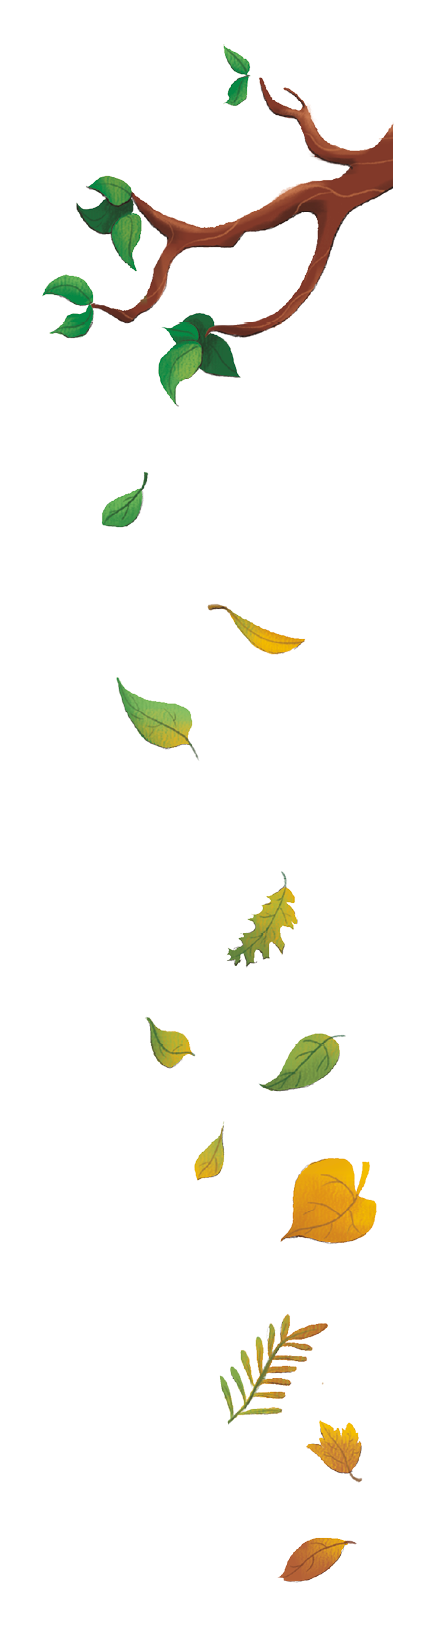 Imagem: Ilustração. Árvore com folhas pequenas pretas, soltando folhas diversas em tons de verde, amarelo e laranja. Fim da imagem.